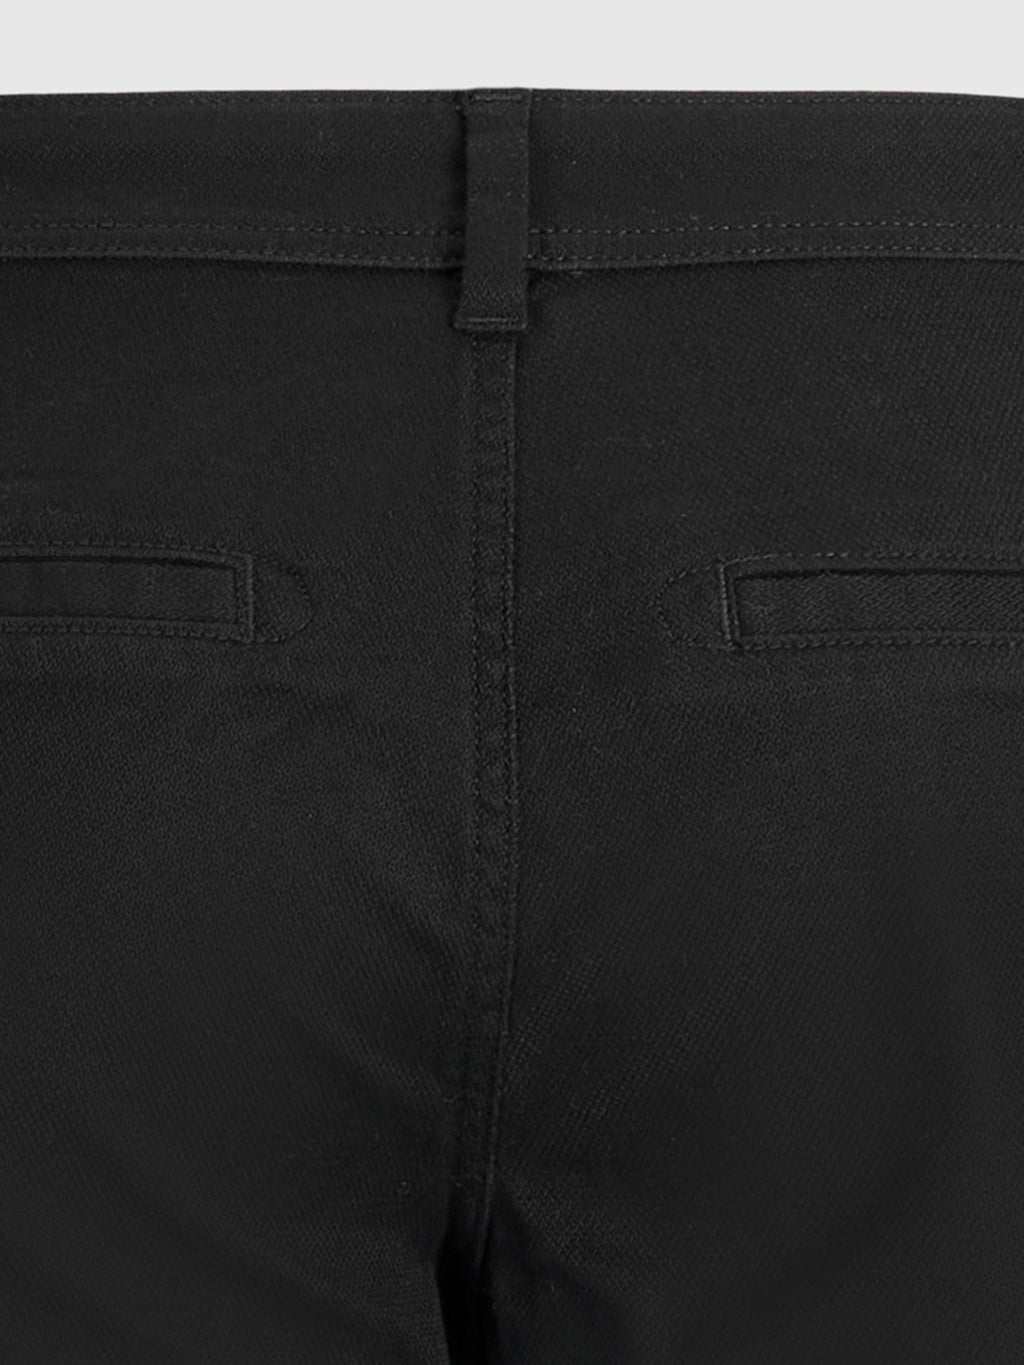 原始性能结构裤（常规） - 黑色